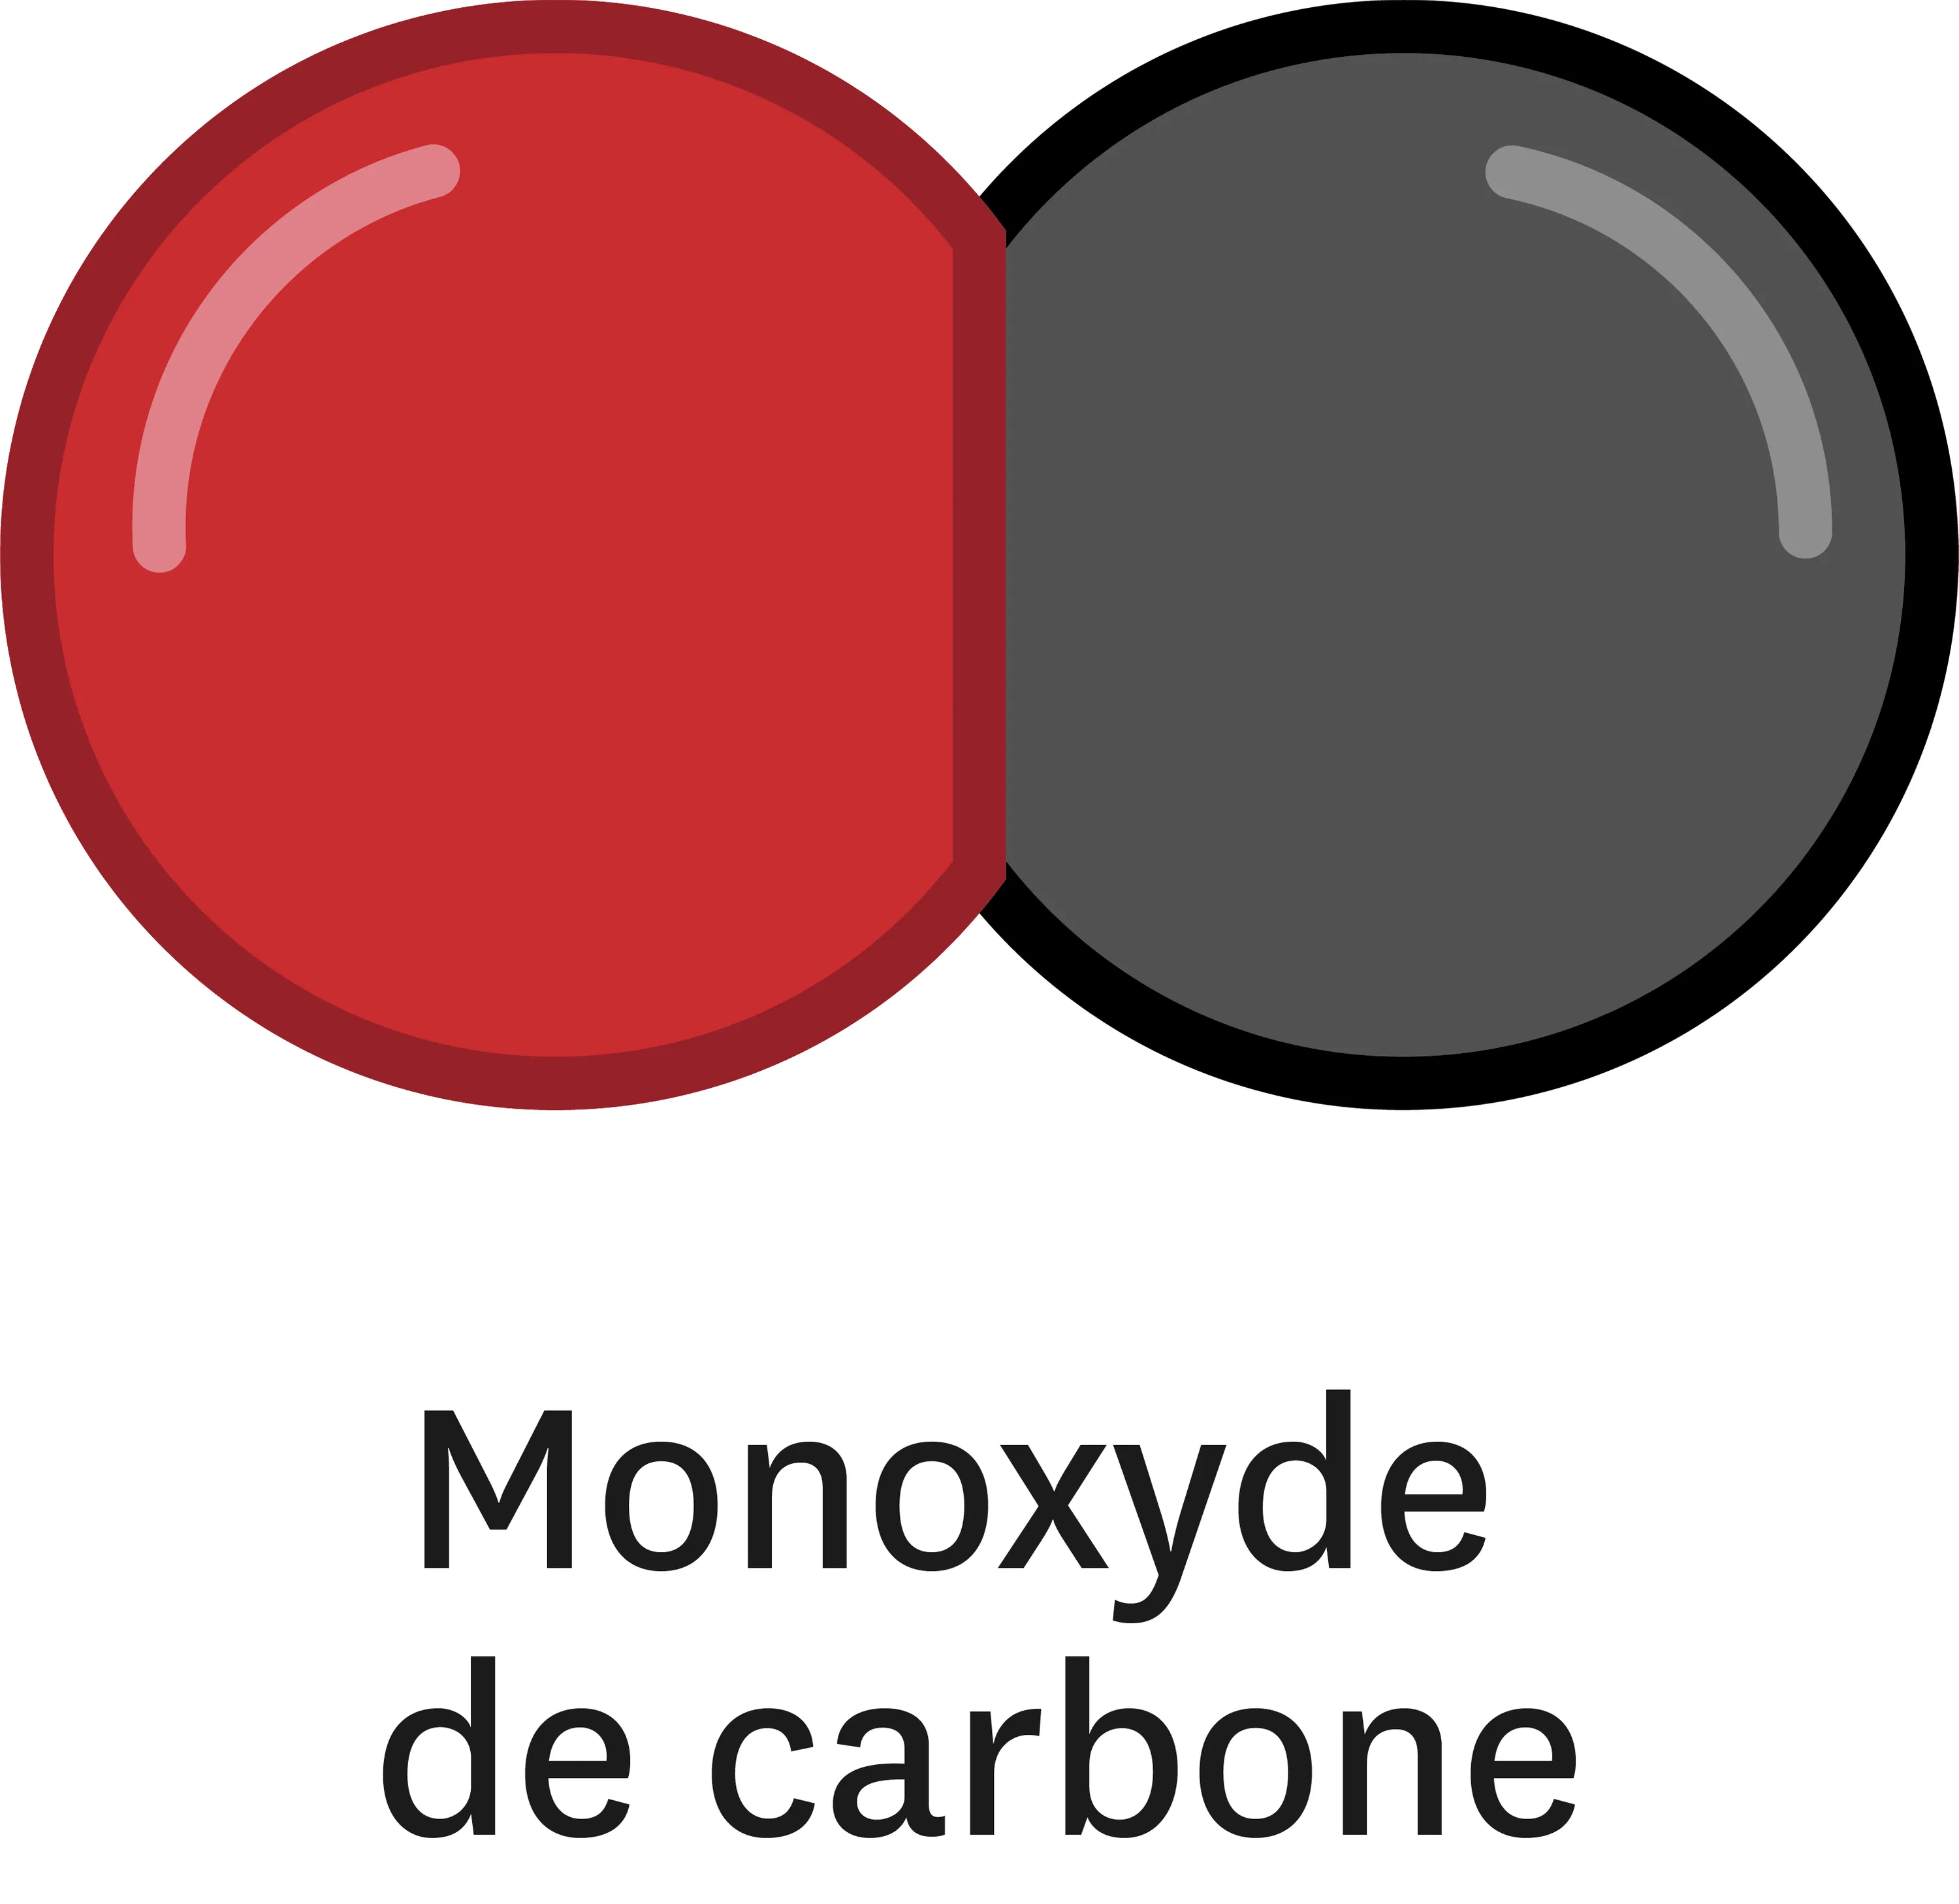 La combustion incomplète du méthane génère du monoxyde de carbone, du dioxyde de carbone et de l'eau.